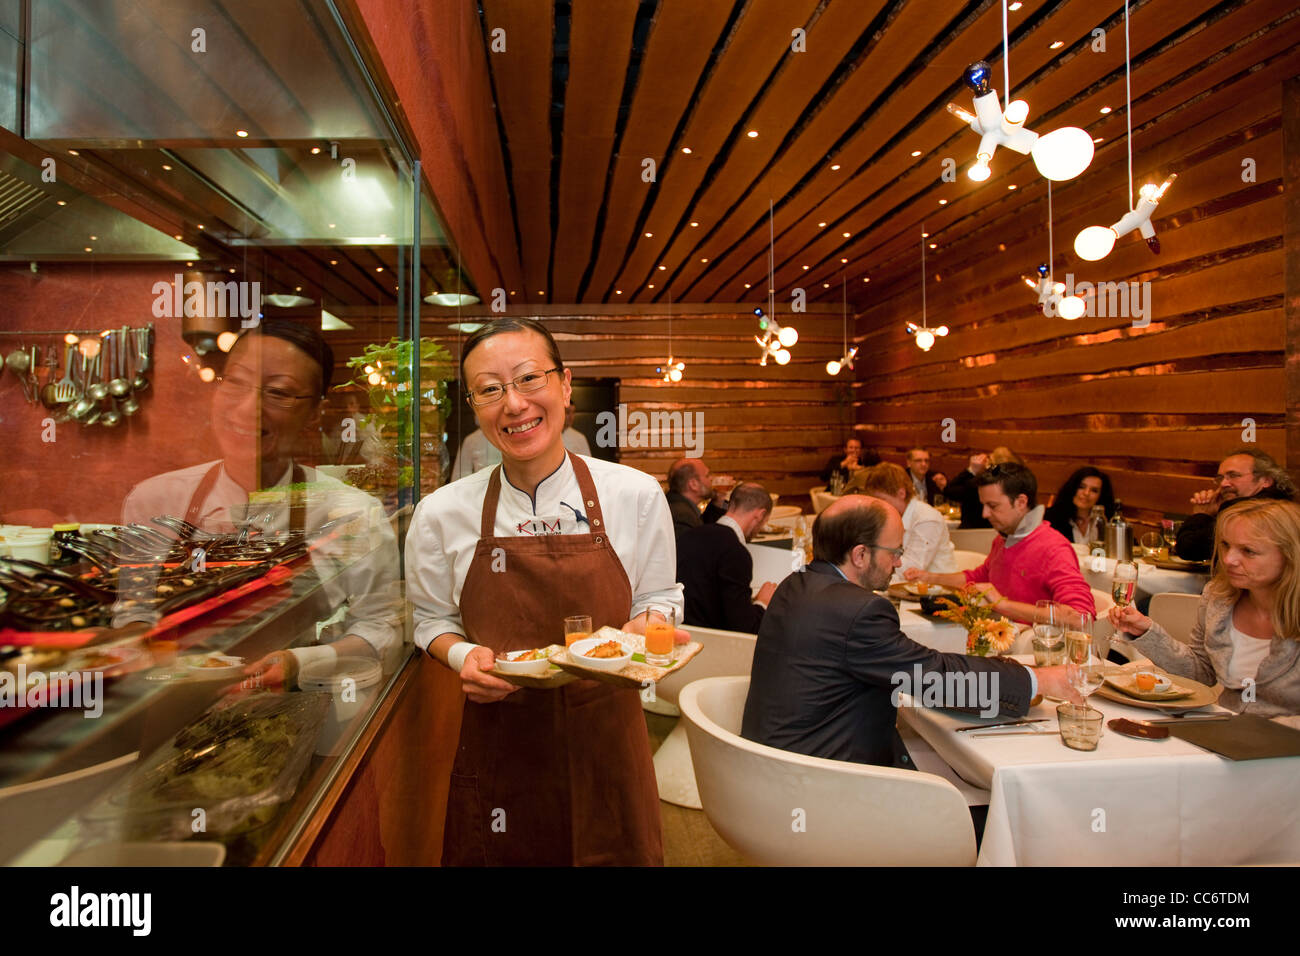 Österrreich, Wien 9, Lustkandlgasse 4, 'Kim kocht' asiatisch kreative Küche auf höchstem Niveau. Kim serviert persönlich. Stock Photo